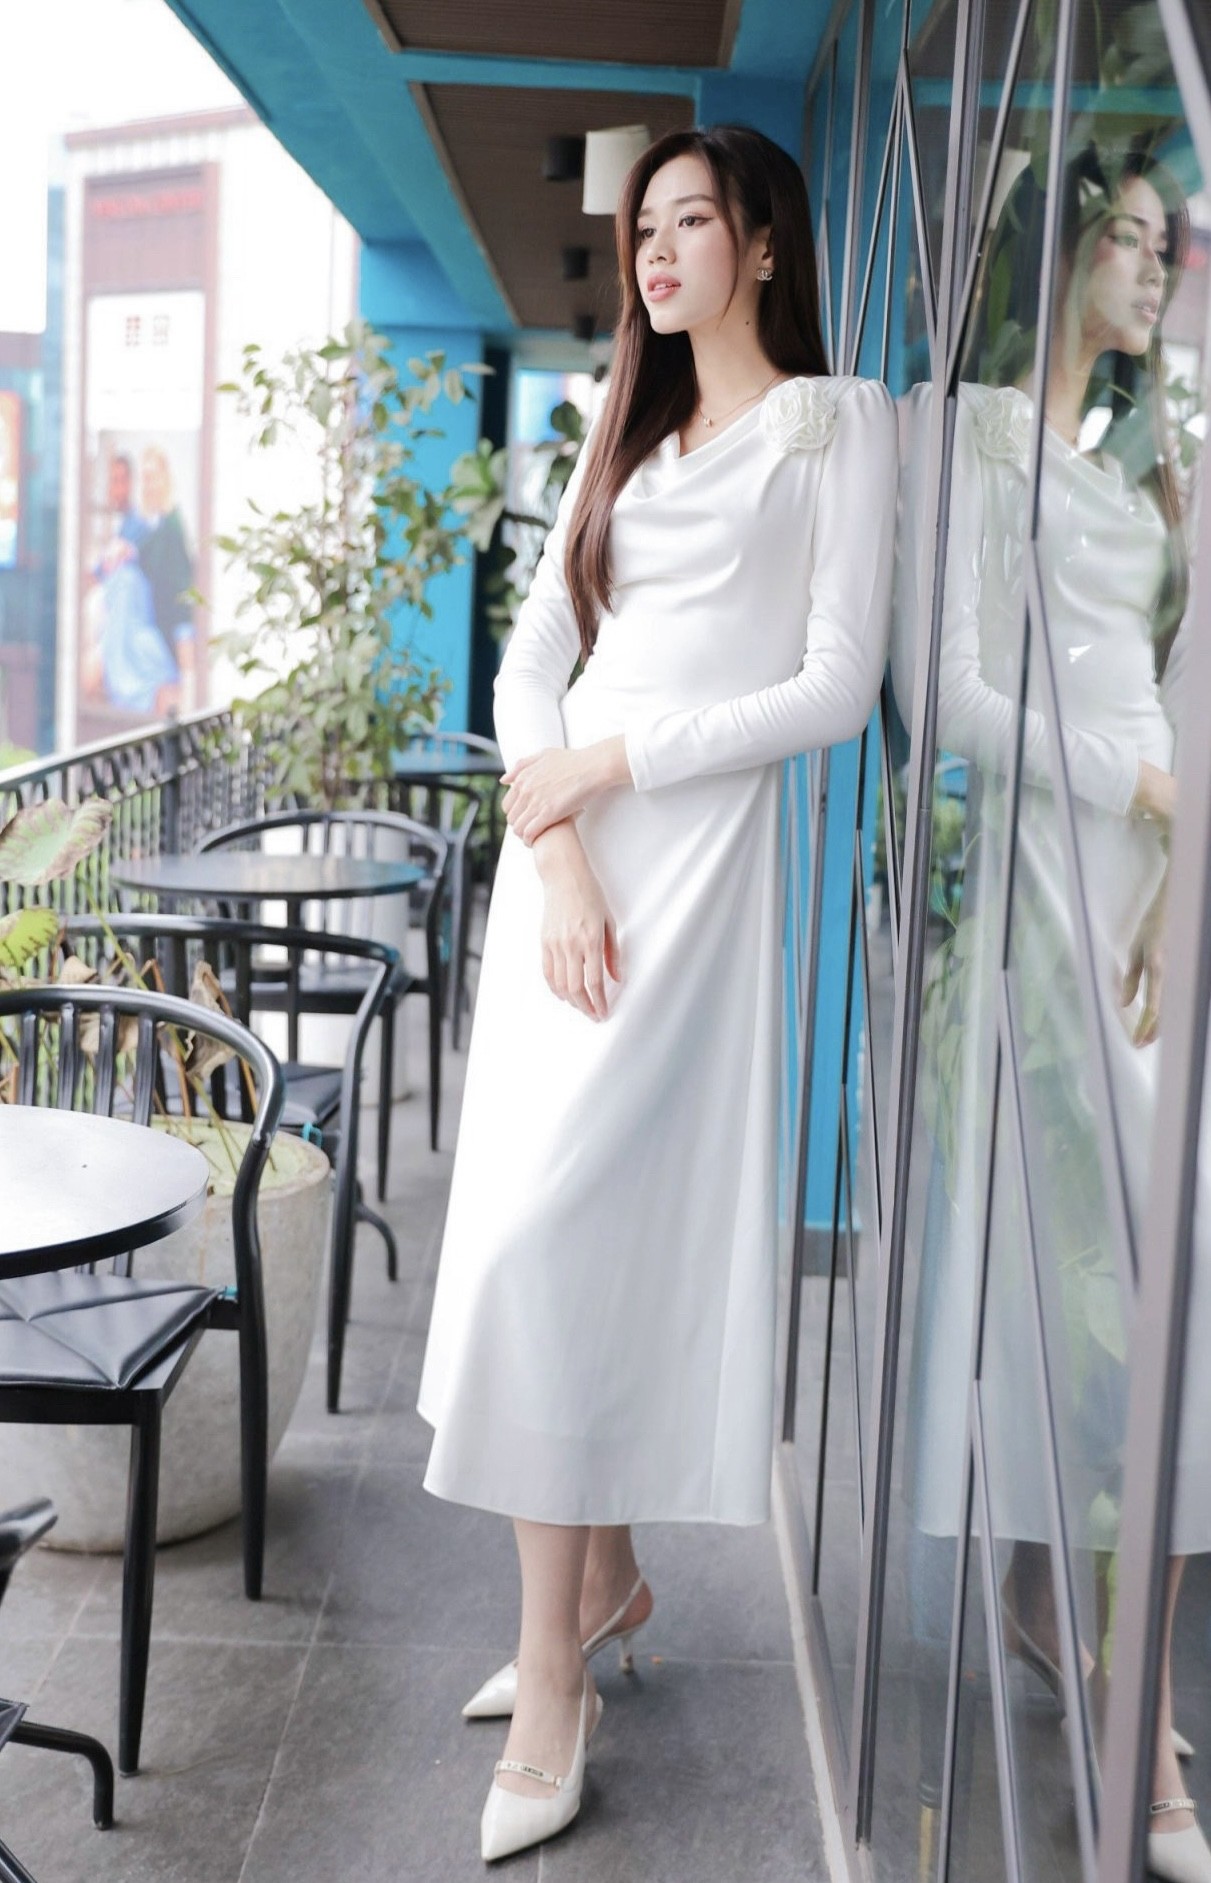 Hoa hậu Đỗ Thị Hà: ‘Gặp đúng người, tôi kết hôn sớm’ ảnh 3